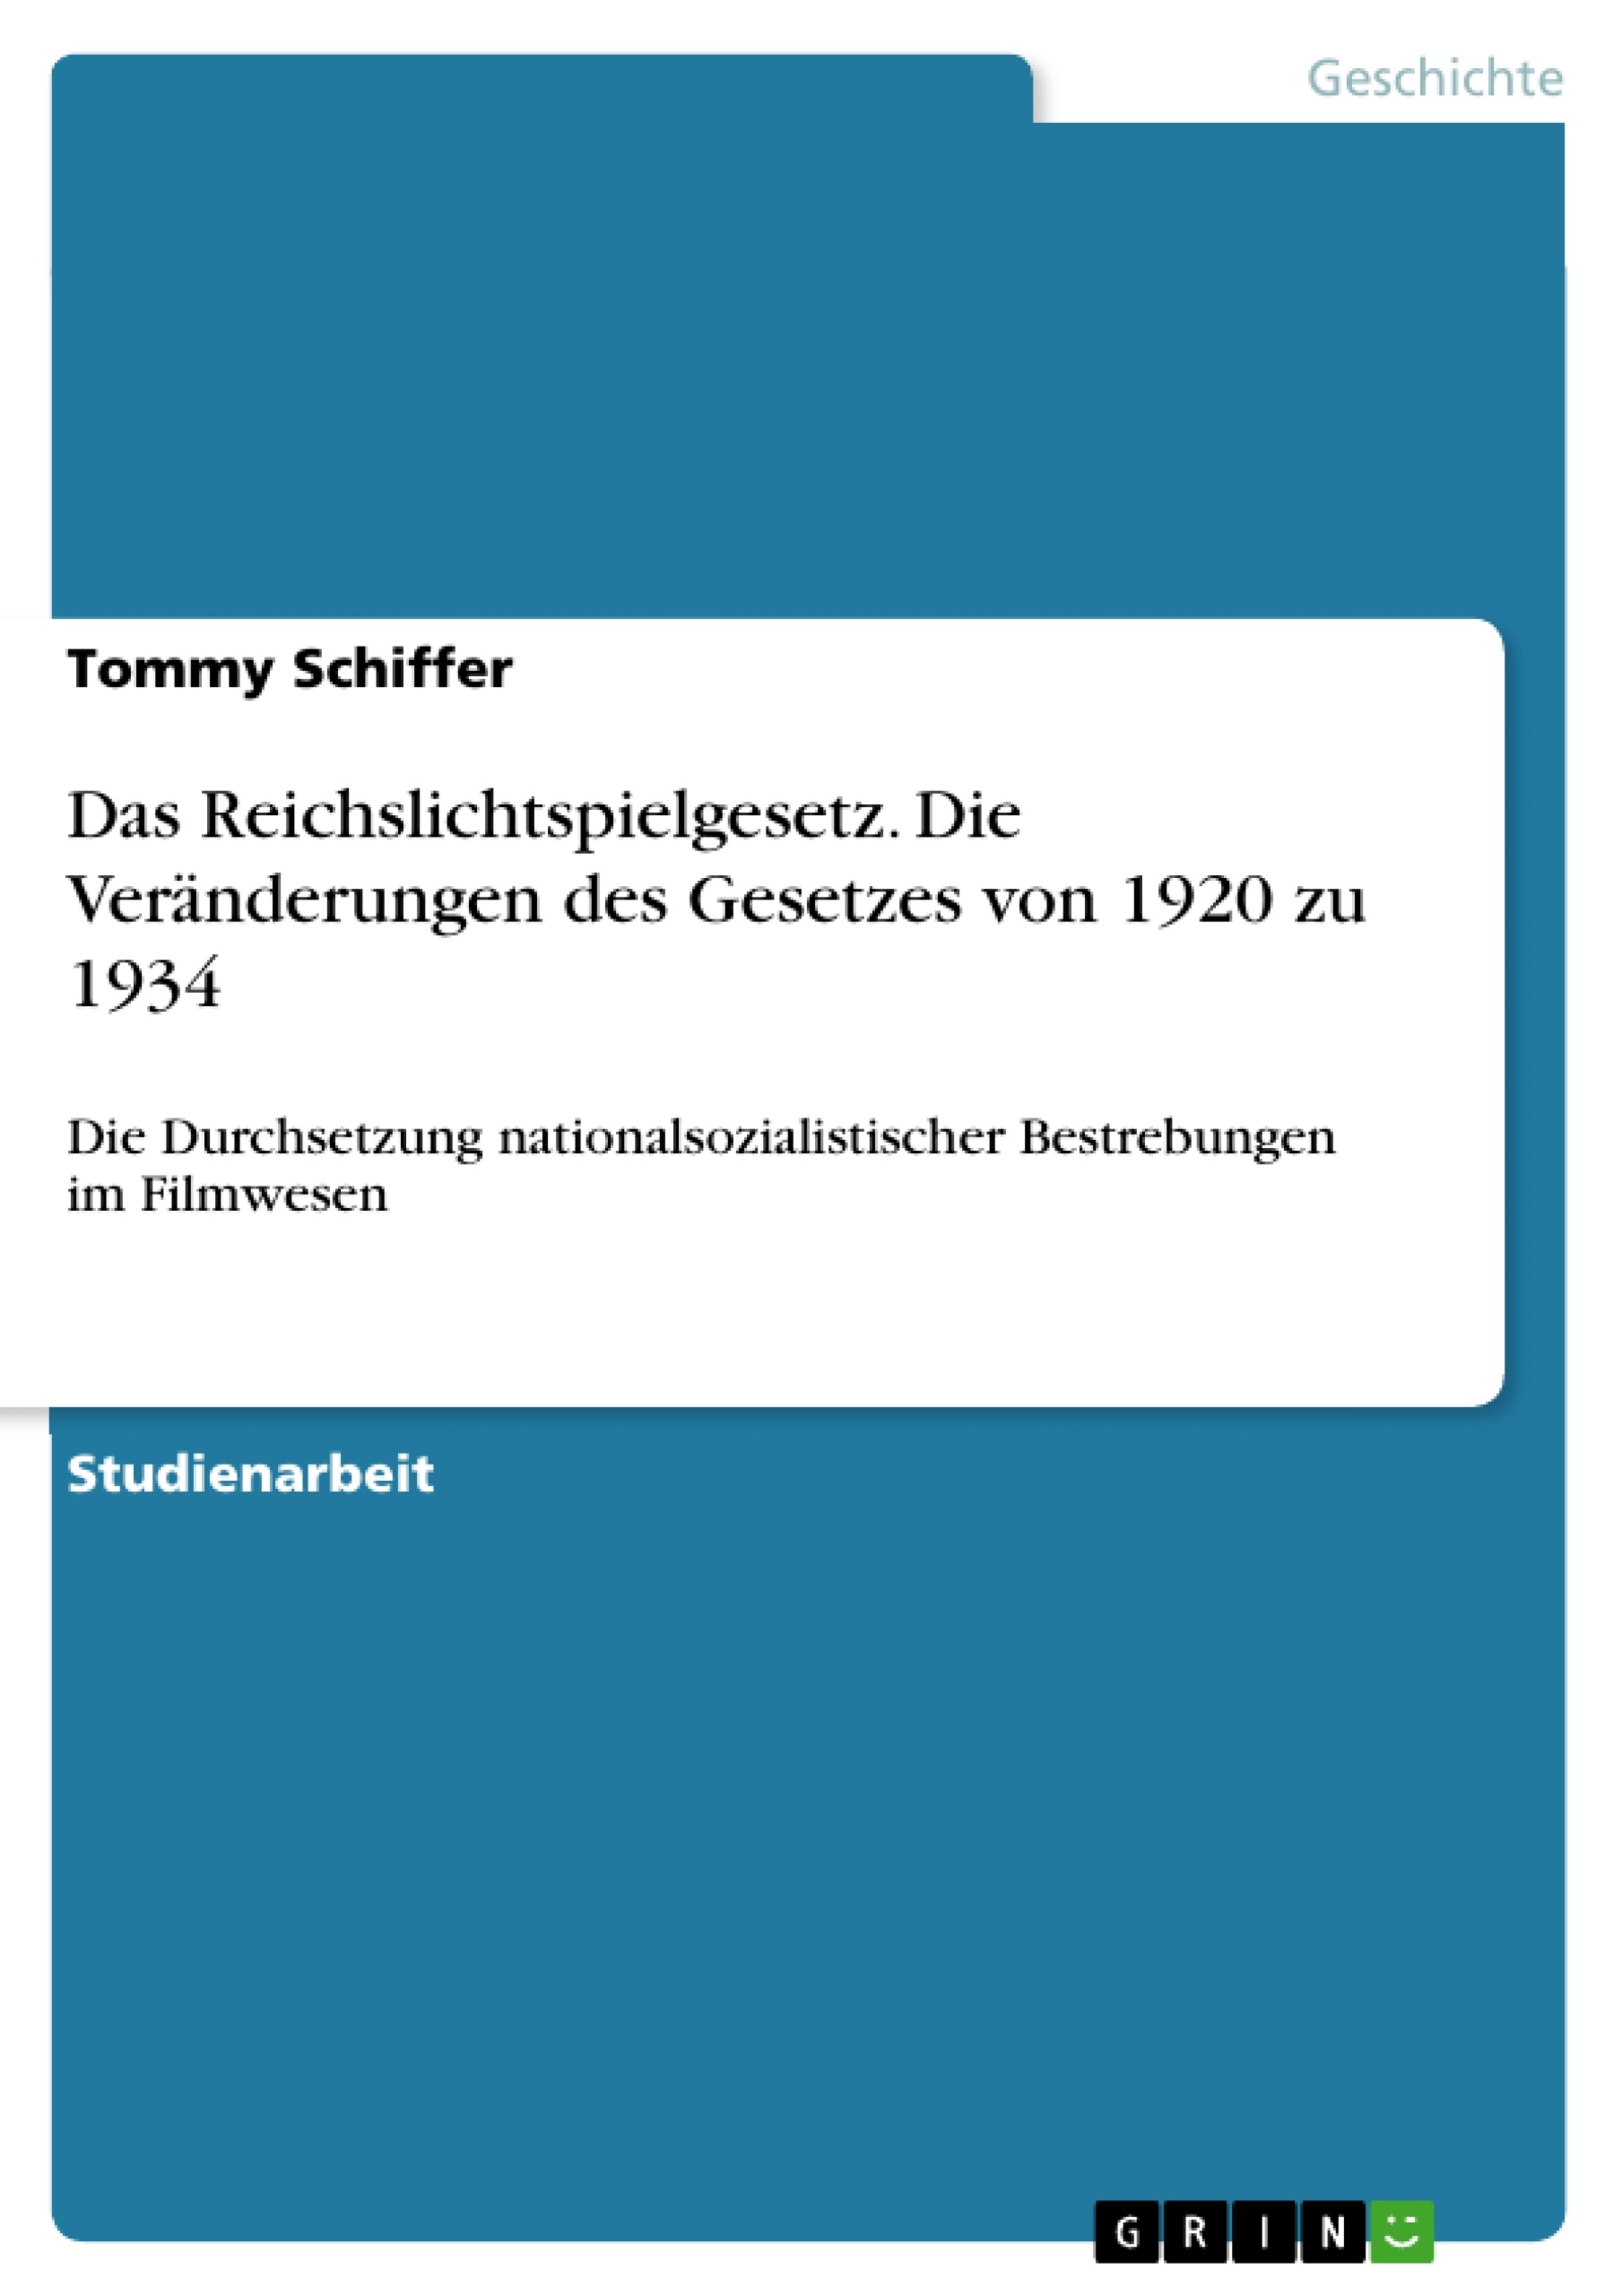 Titre: Das Reichslichtspielgesetz. Die Veränderungen des Gesetzes von 1920 zu 1934